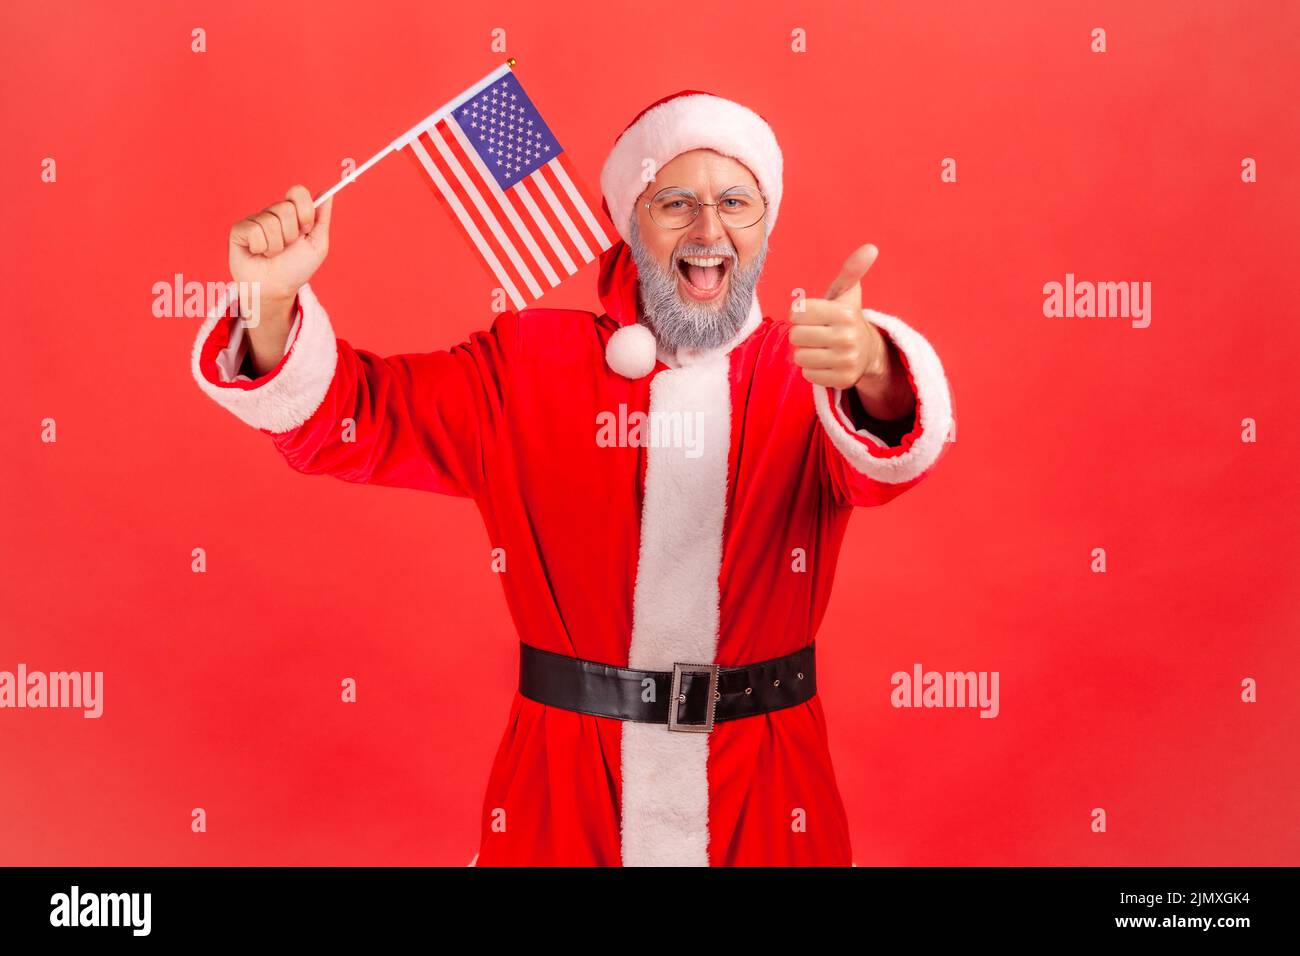 Sonriente hombre anciano positivo con barba gris vestido de papá noel sosteniendo la bandera de EE.UU., mostrando el pulgar a la cámara, teniendo un humor patriótico. Estudio de interior grabado aislado sobre fondo rojo. Foto de stock